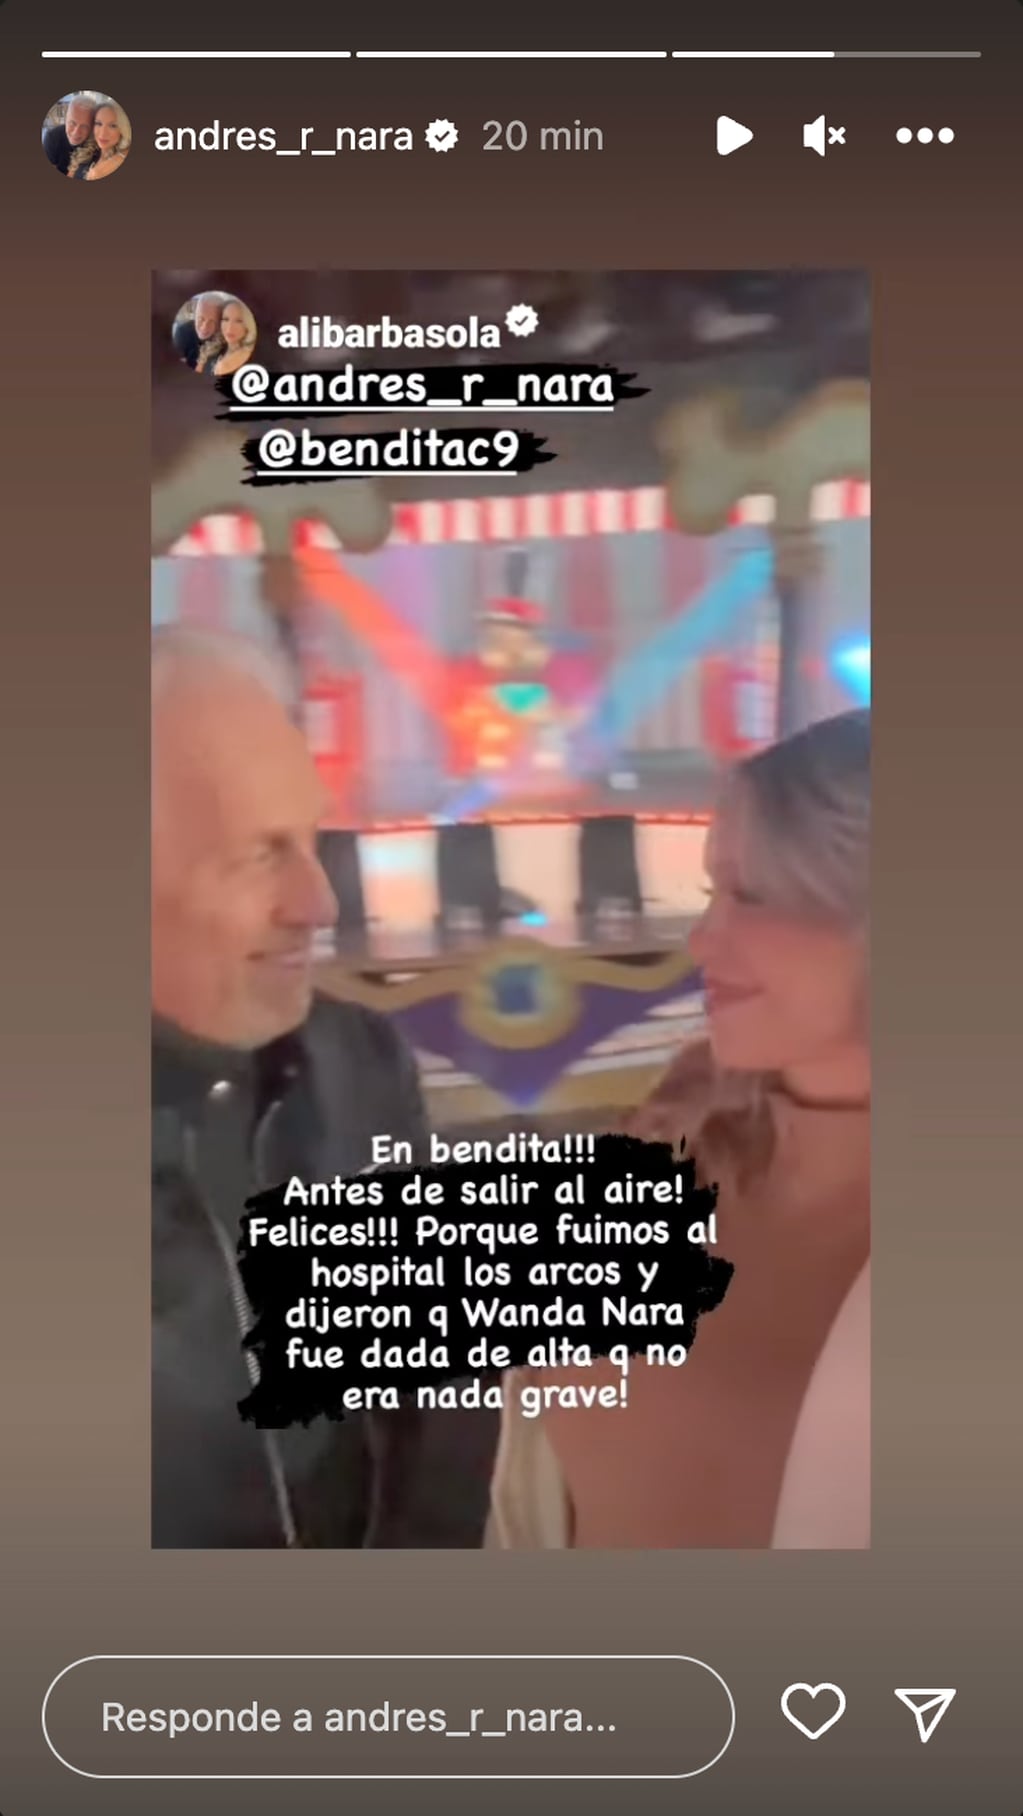 La esposa de Andrés Nara aseguró que Wanda fue dada de alta. (Foto: Captura de pantalla)